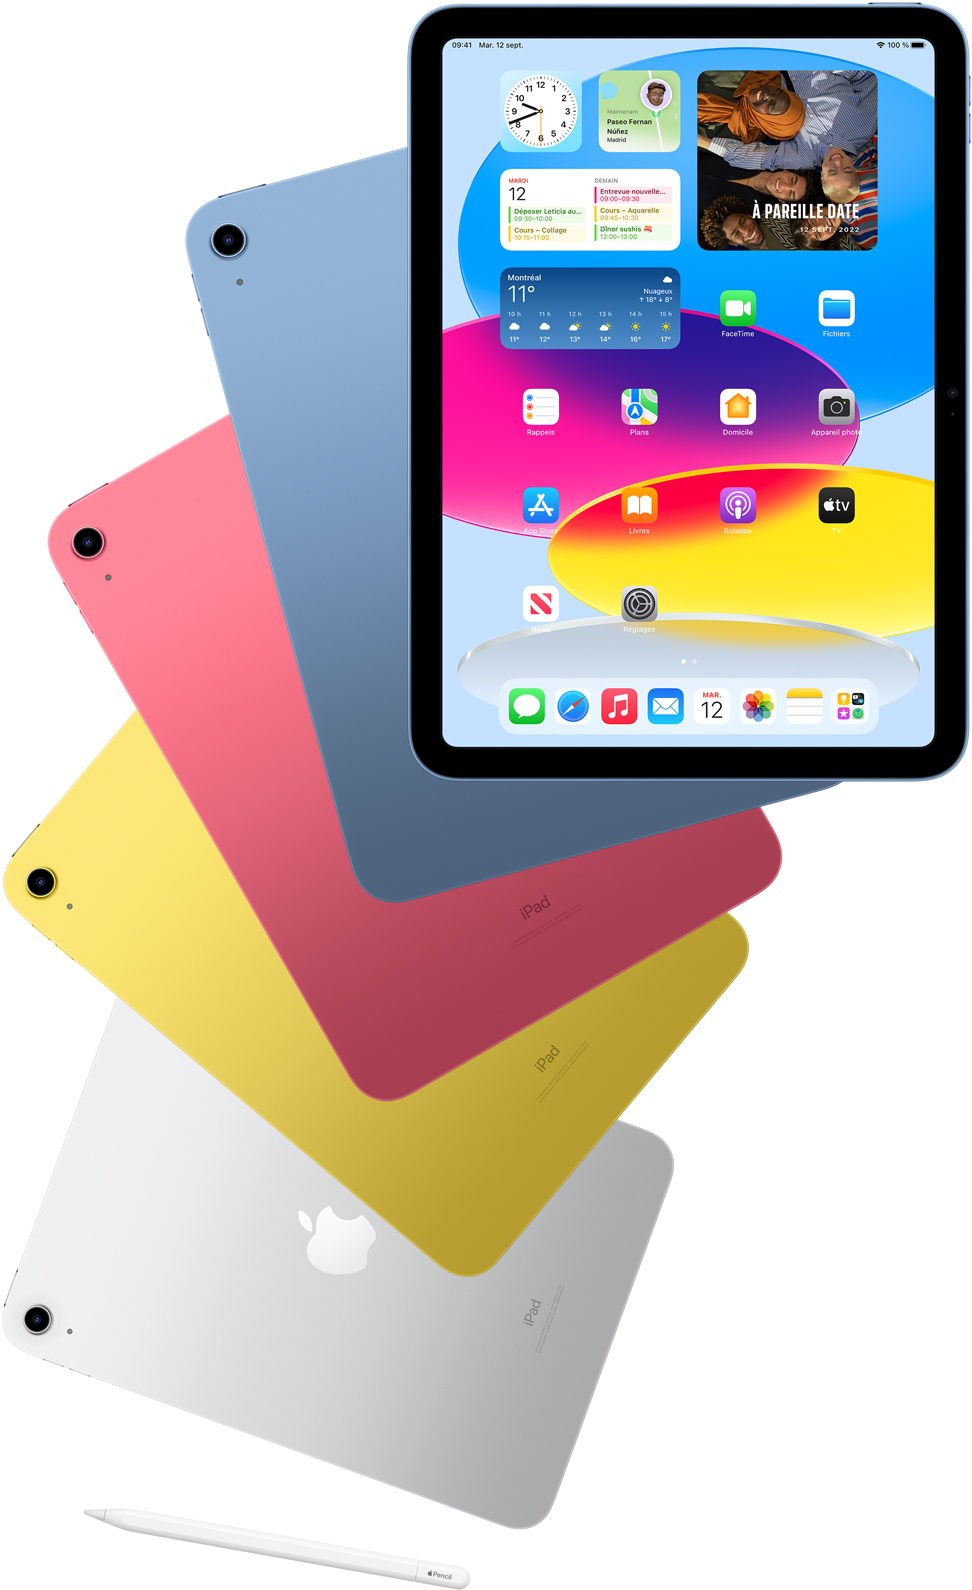 Vue avant d’un iPad affichant l’écran d’accueil et placé devant des iPad bleu, rose, jaune et argent vus de dos. Un Apple Pencil est placé à côté des iPad.